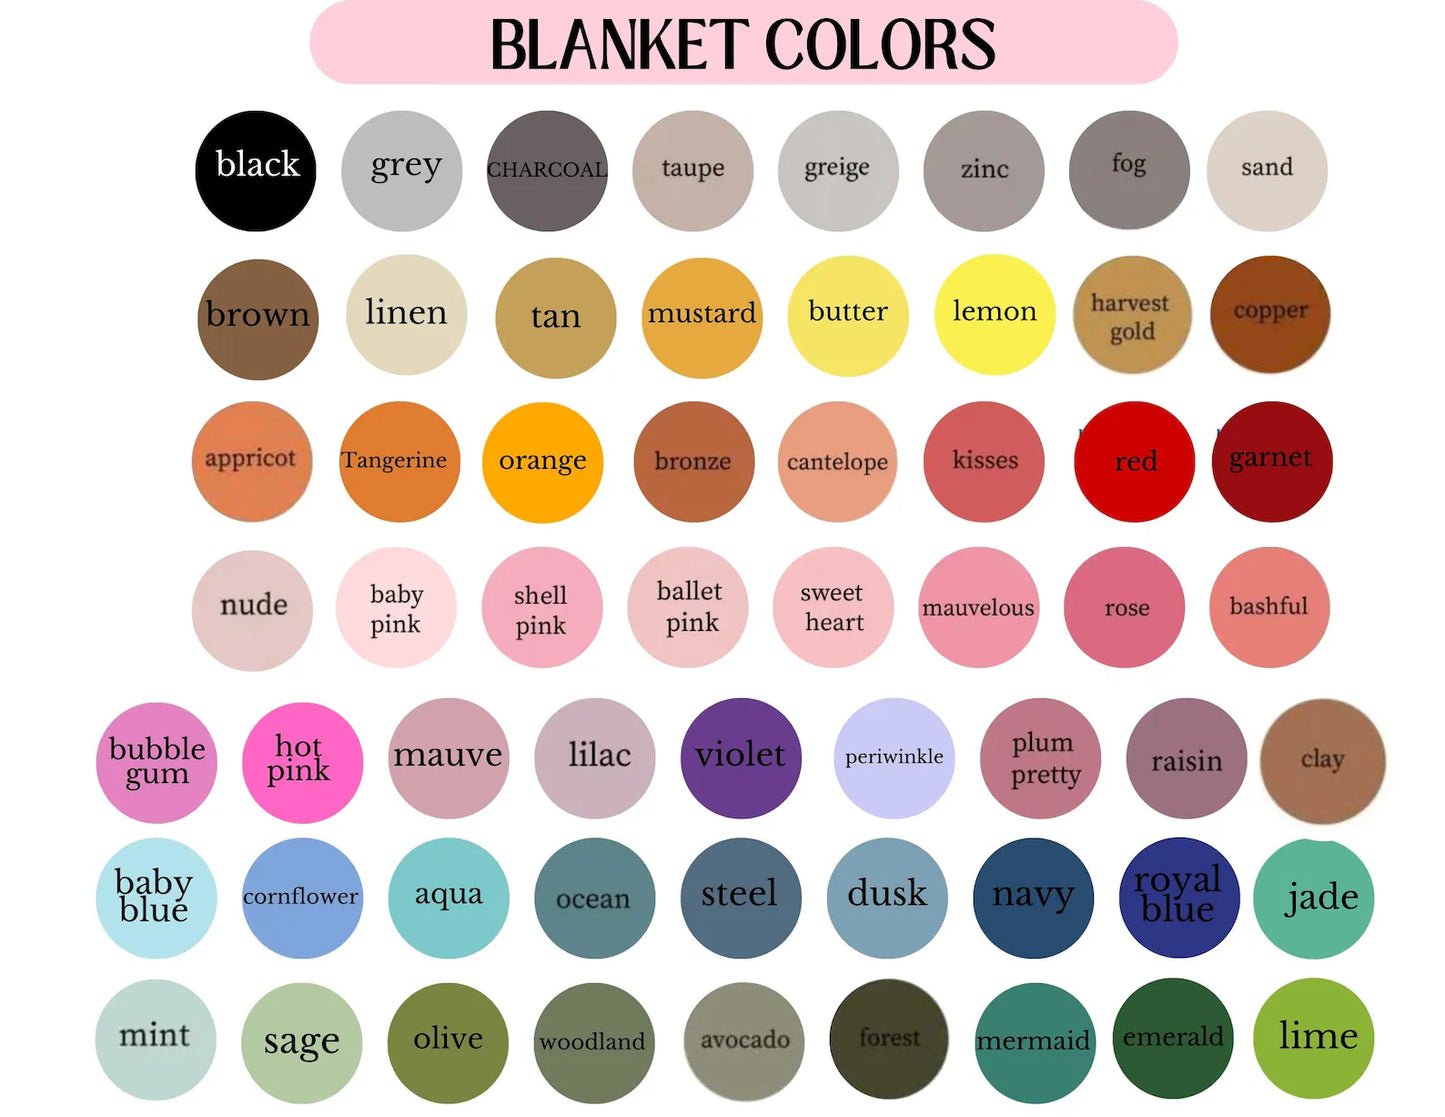 The Charlotte Custom Blanket